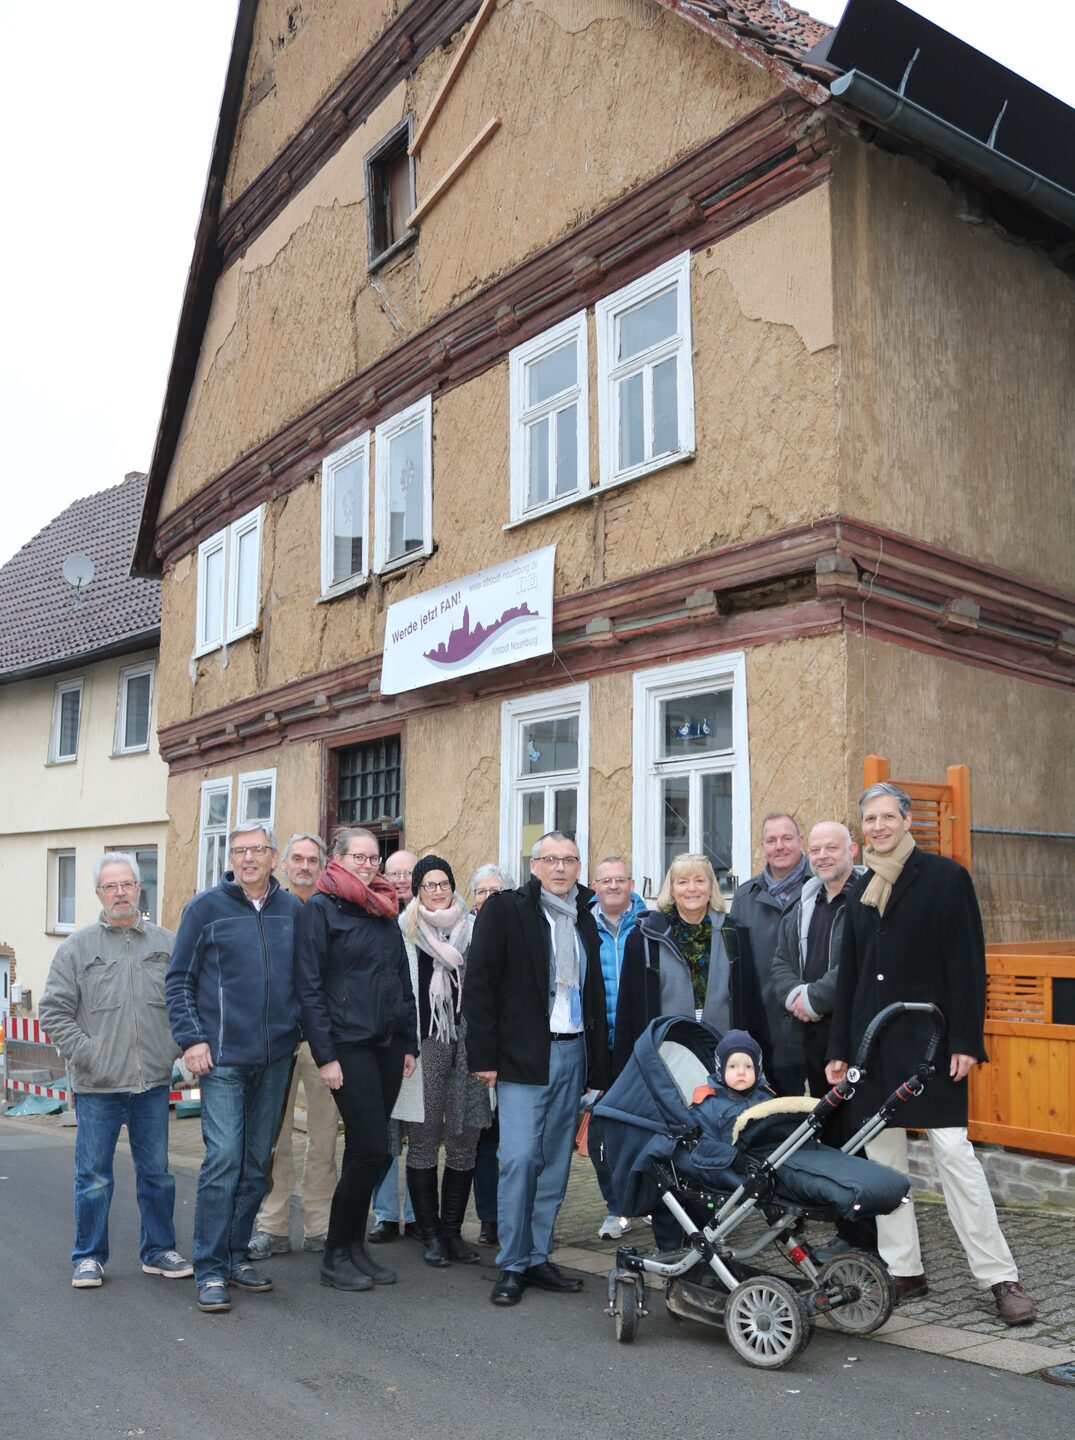 Einige Mitglieder der Bürgergenossenschaft erwarteten Vizelandrat Andreas Siebert (Mitte) bereits vor dem historischen Gebäude in Naumburg.